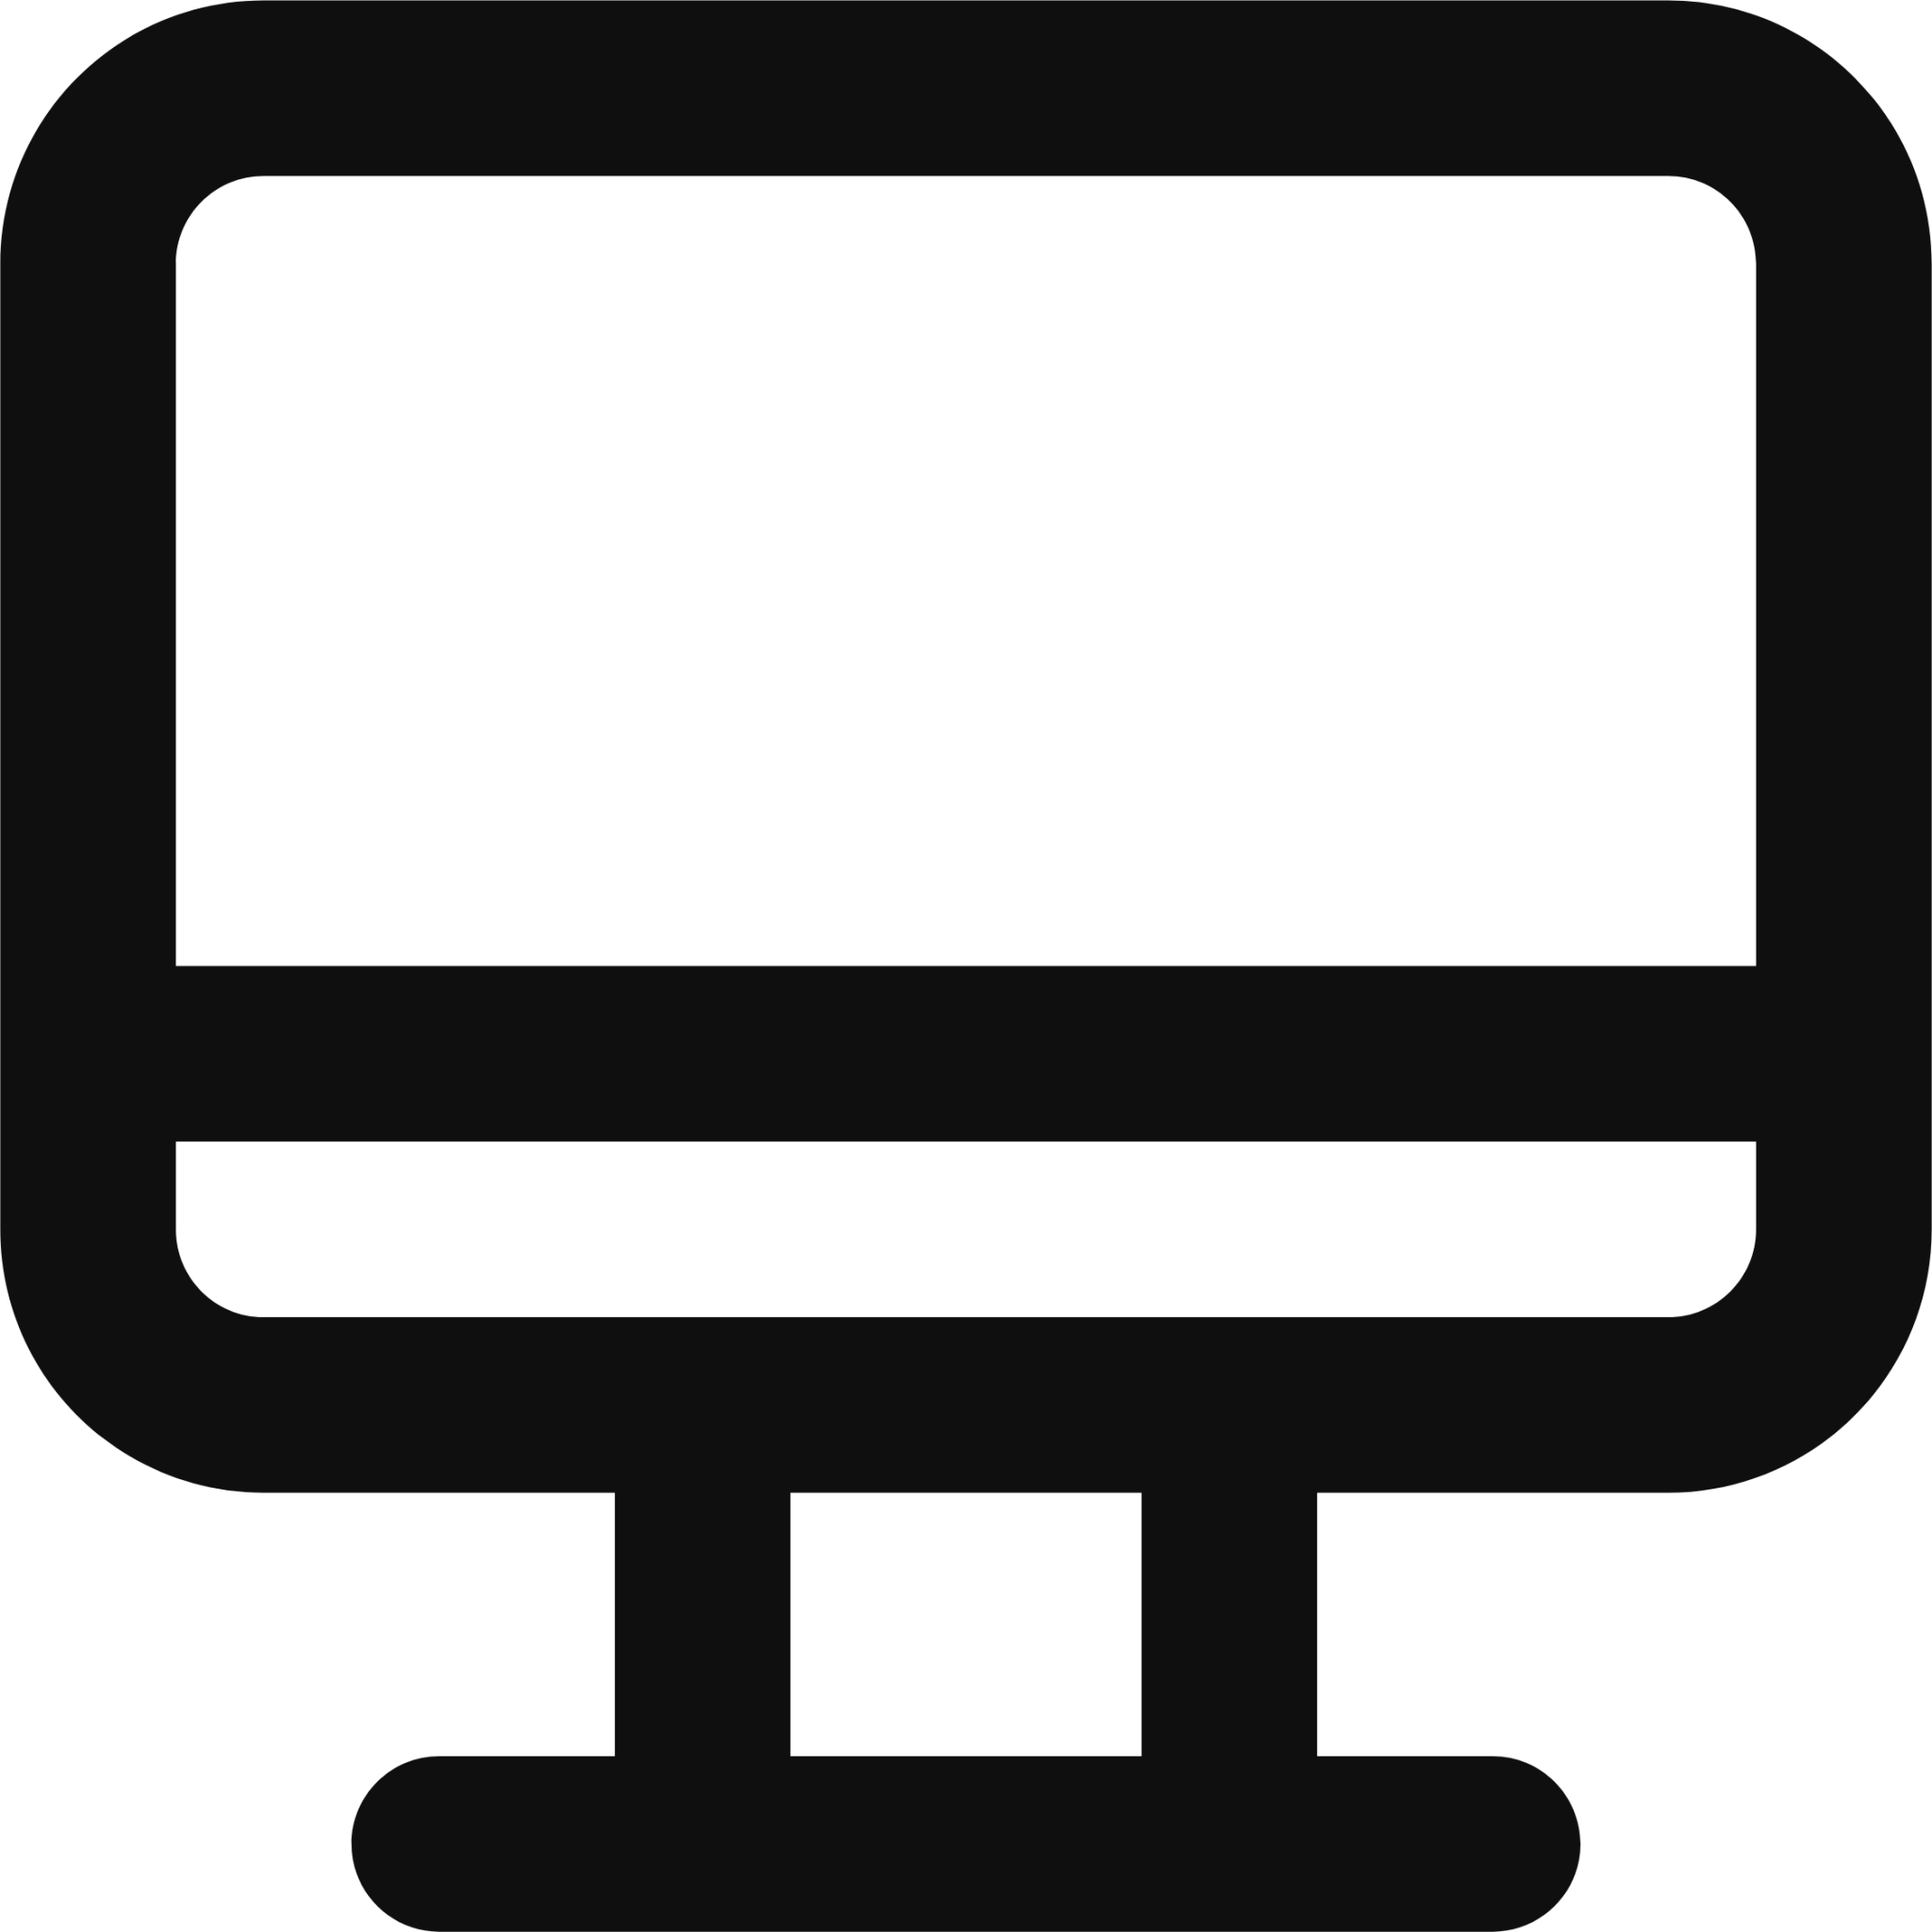 monoblock icon